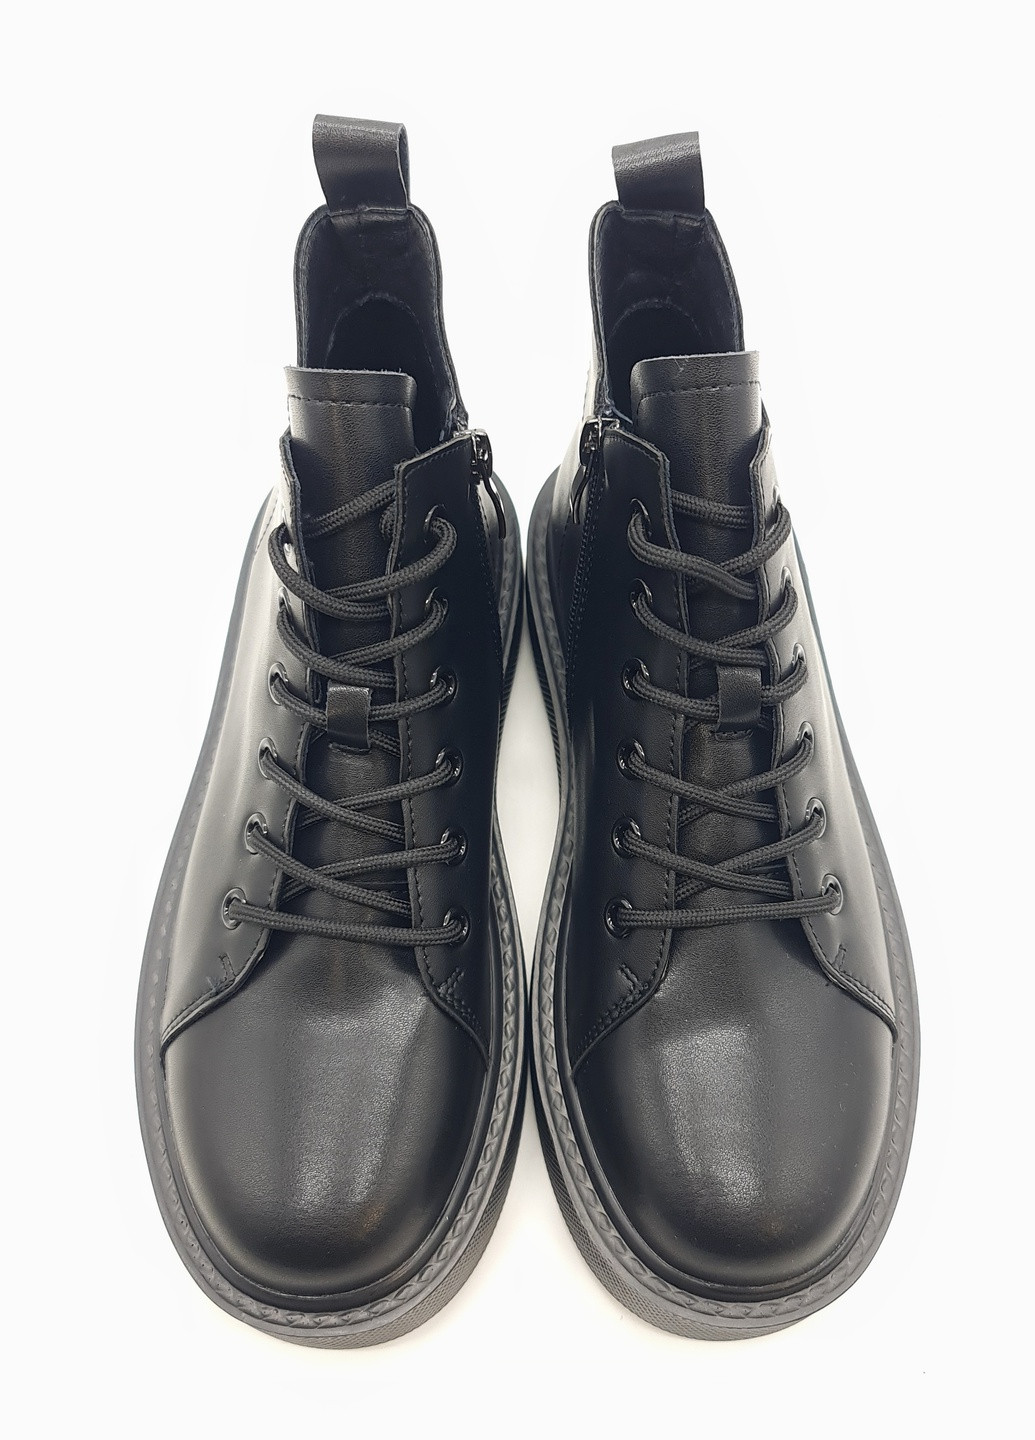 Осенние женские ботинки черные кожаные he-10-1 23,5 см (р) Hengji